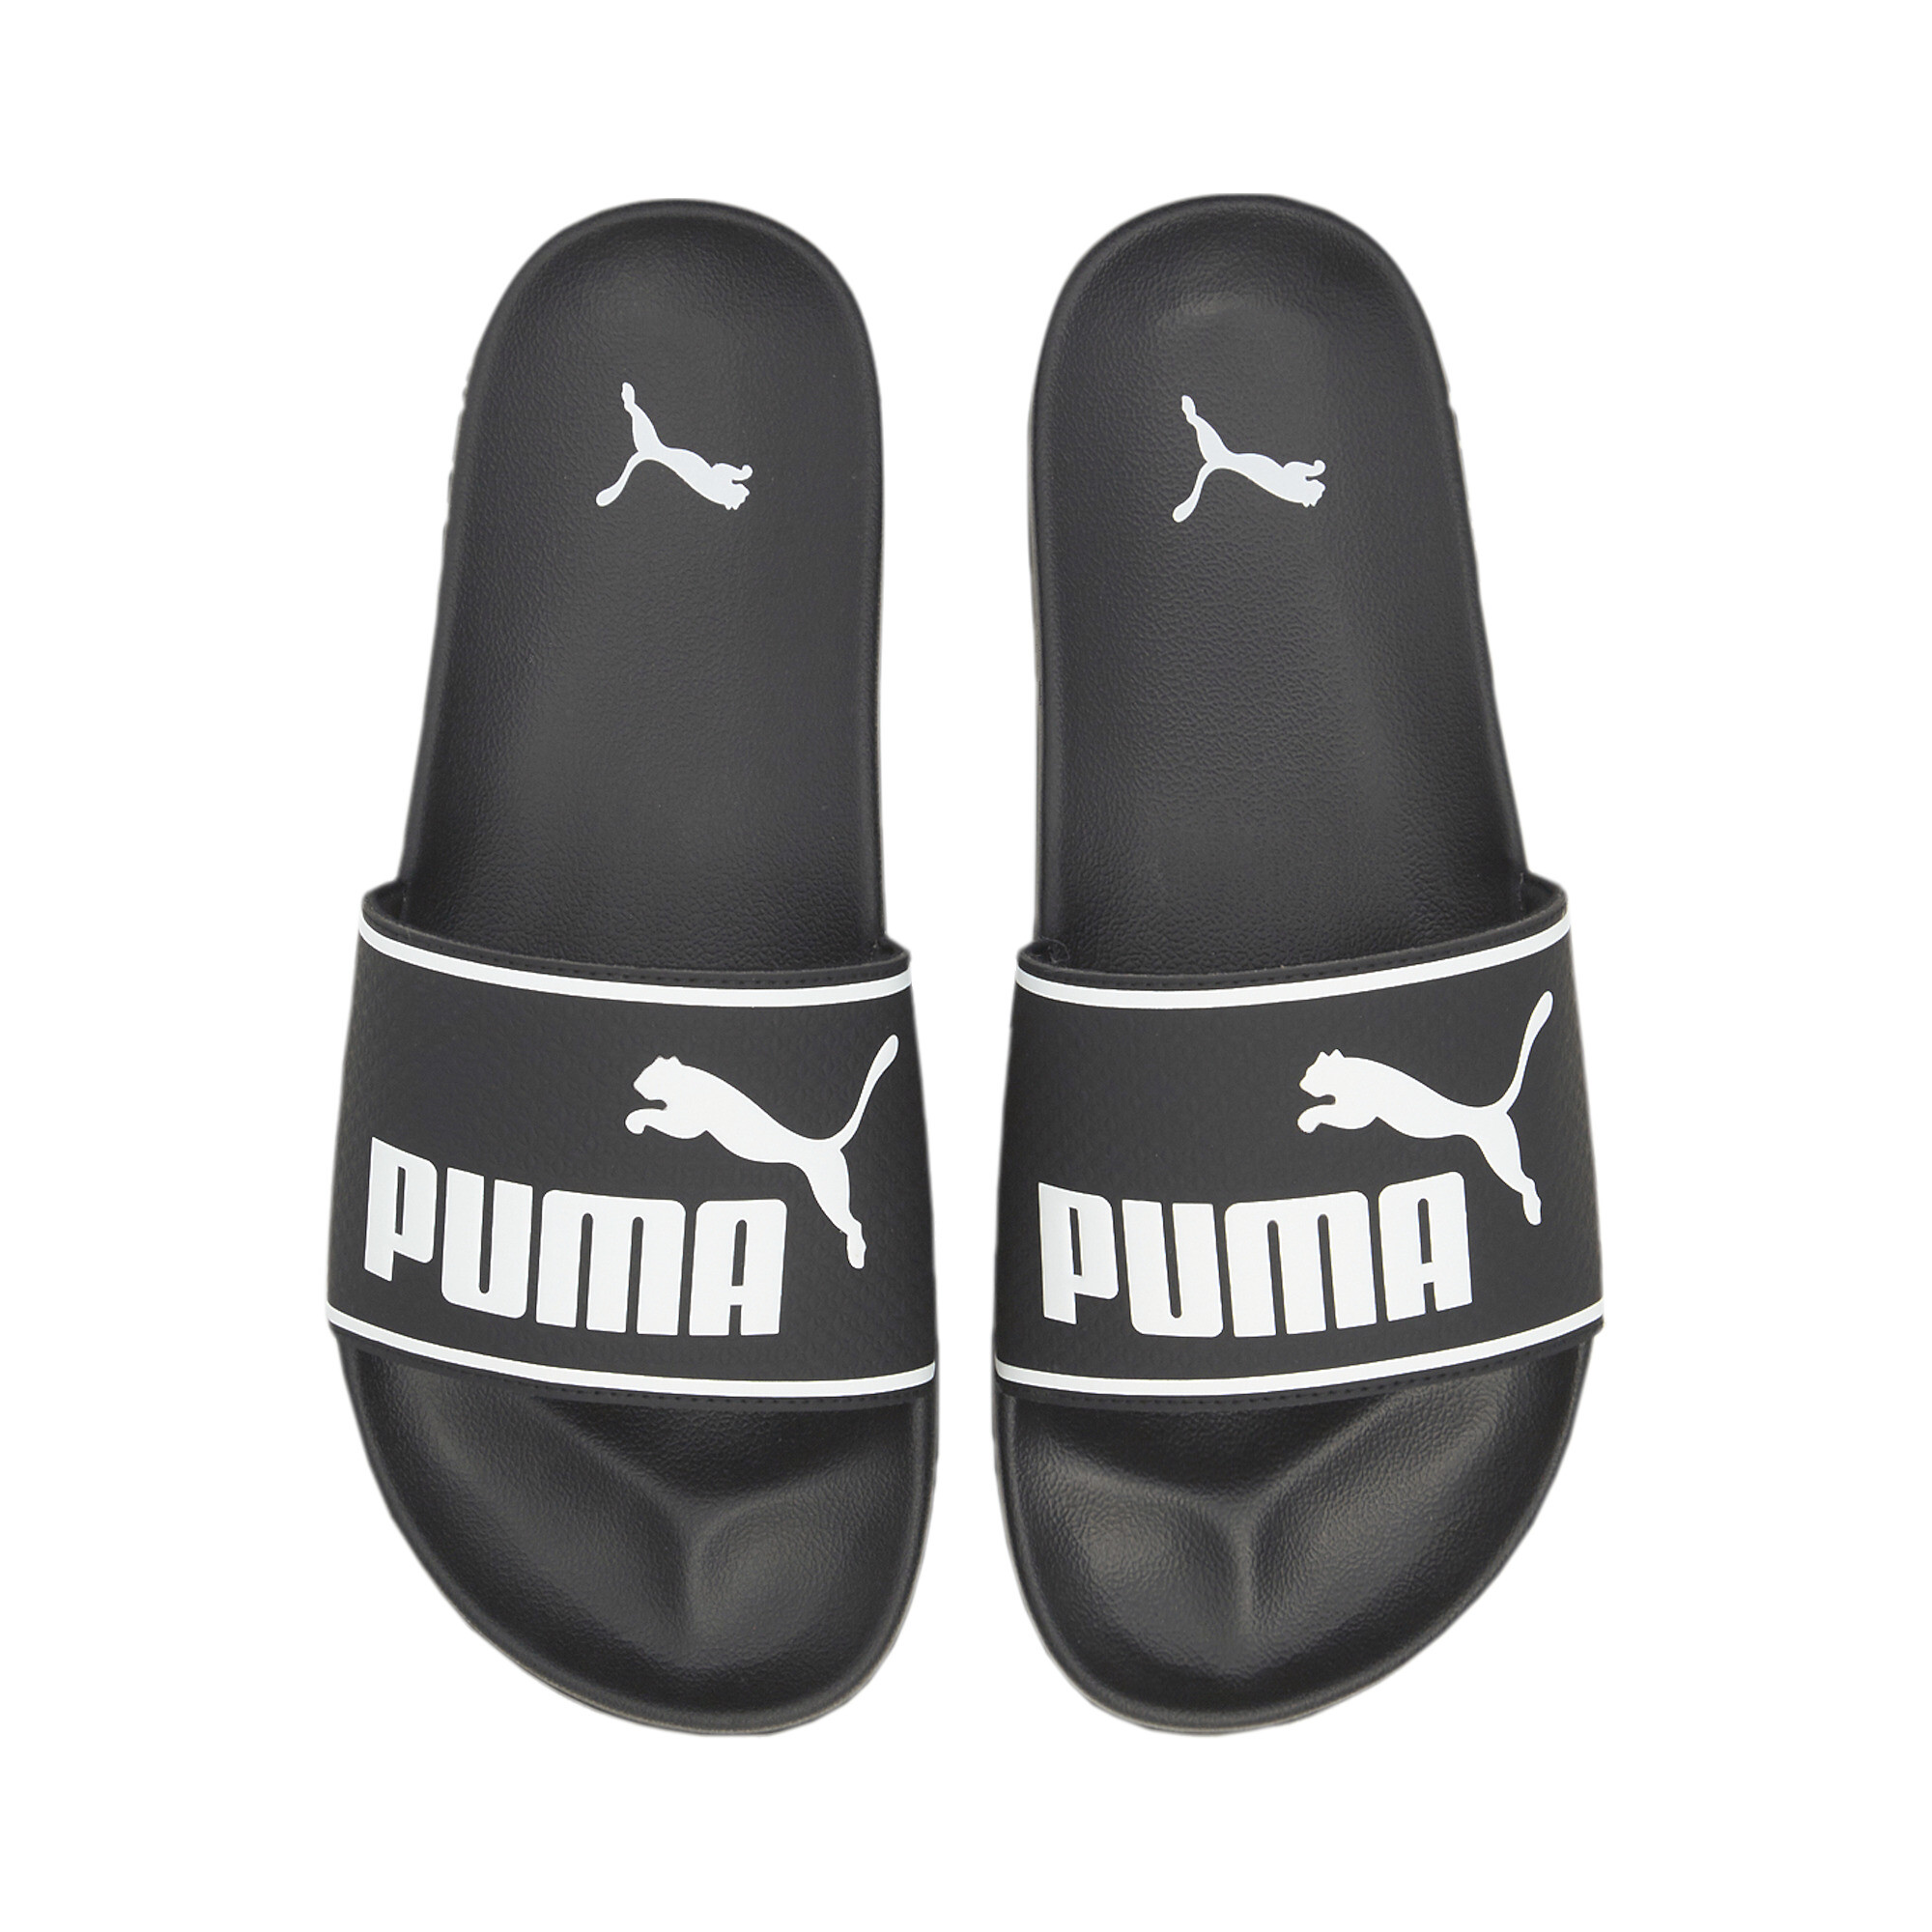 Men's PUMA Leadcat 2.0 Sandals In Black, Size EU 46